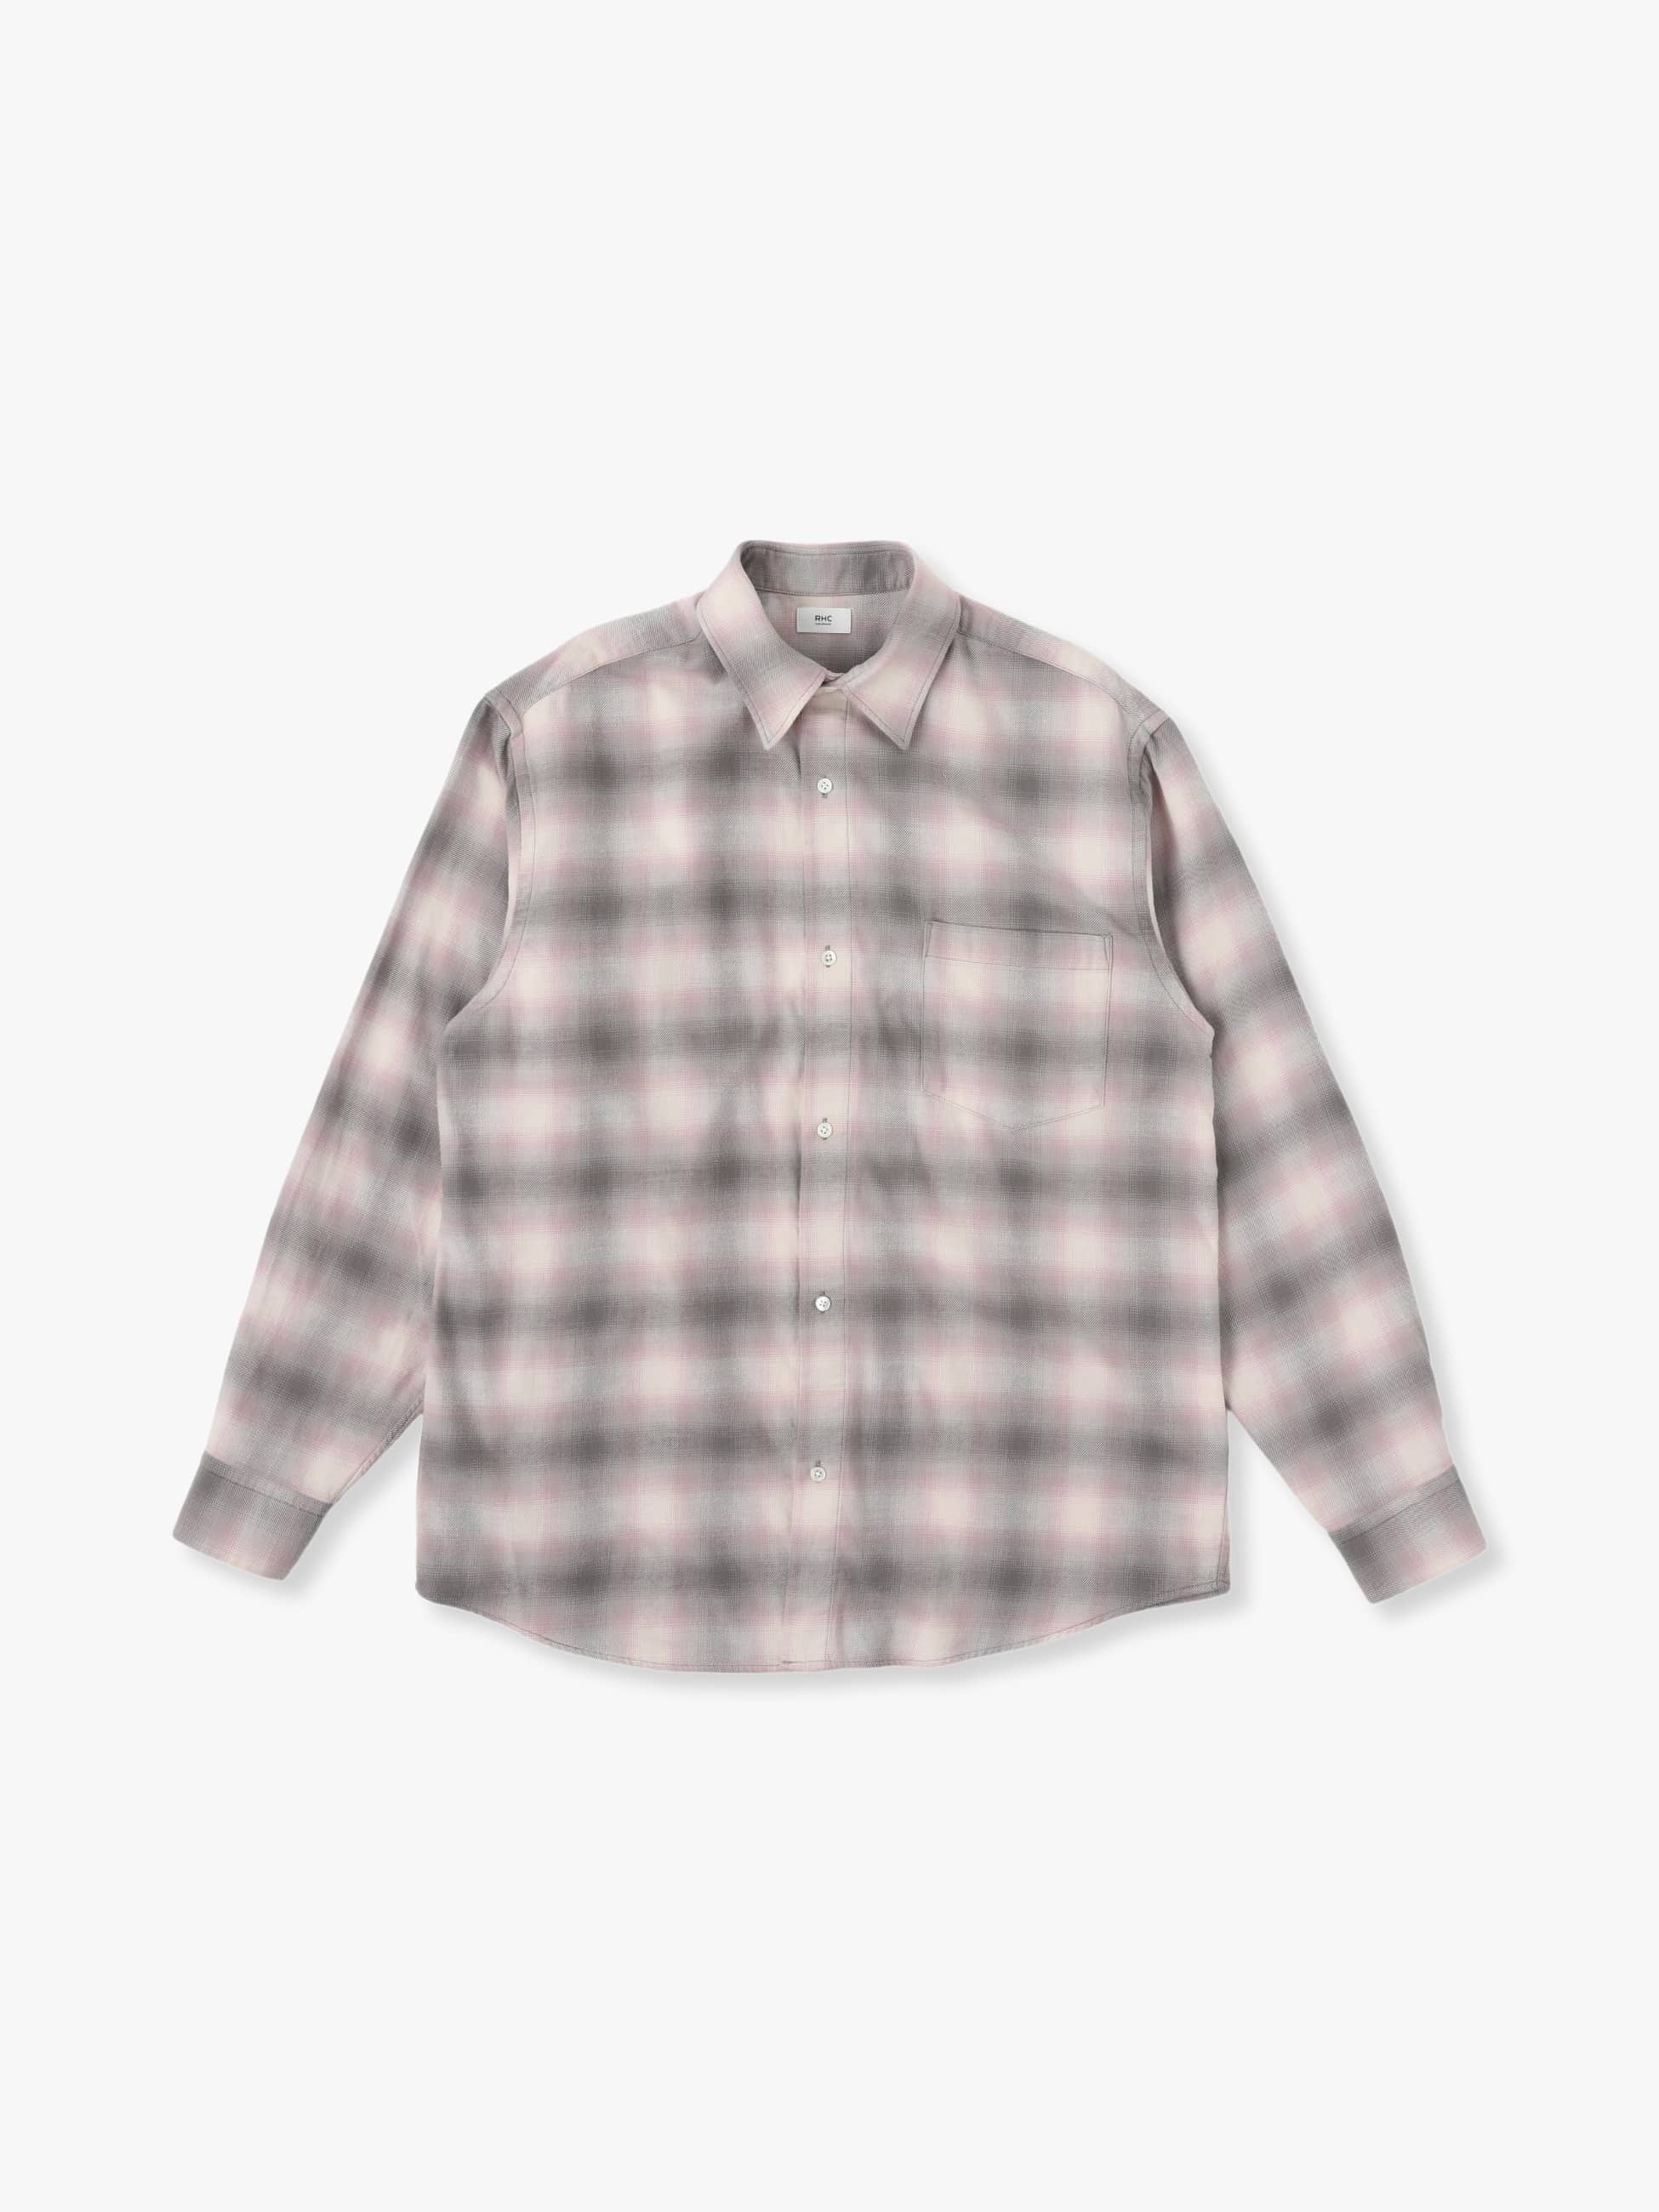 【新品未使用】Ron Herman Flannel Cheked Shirt